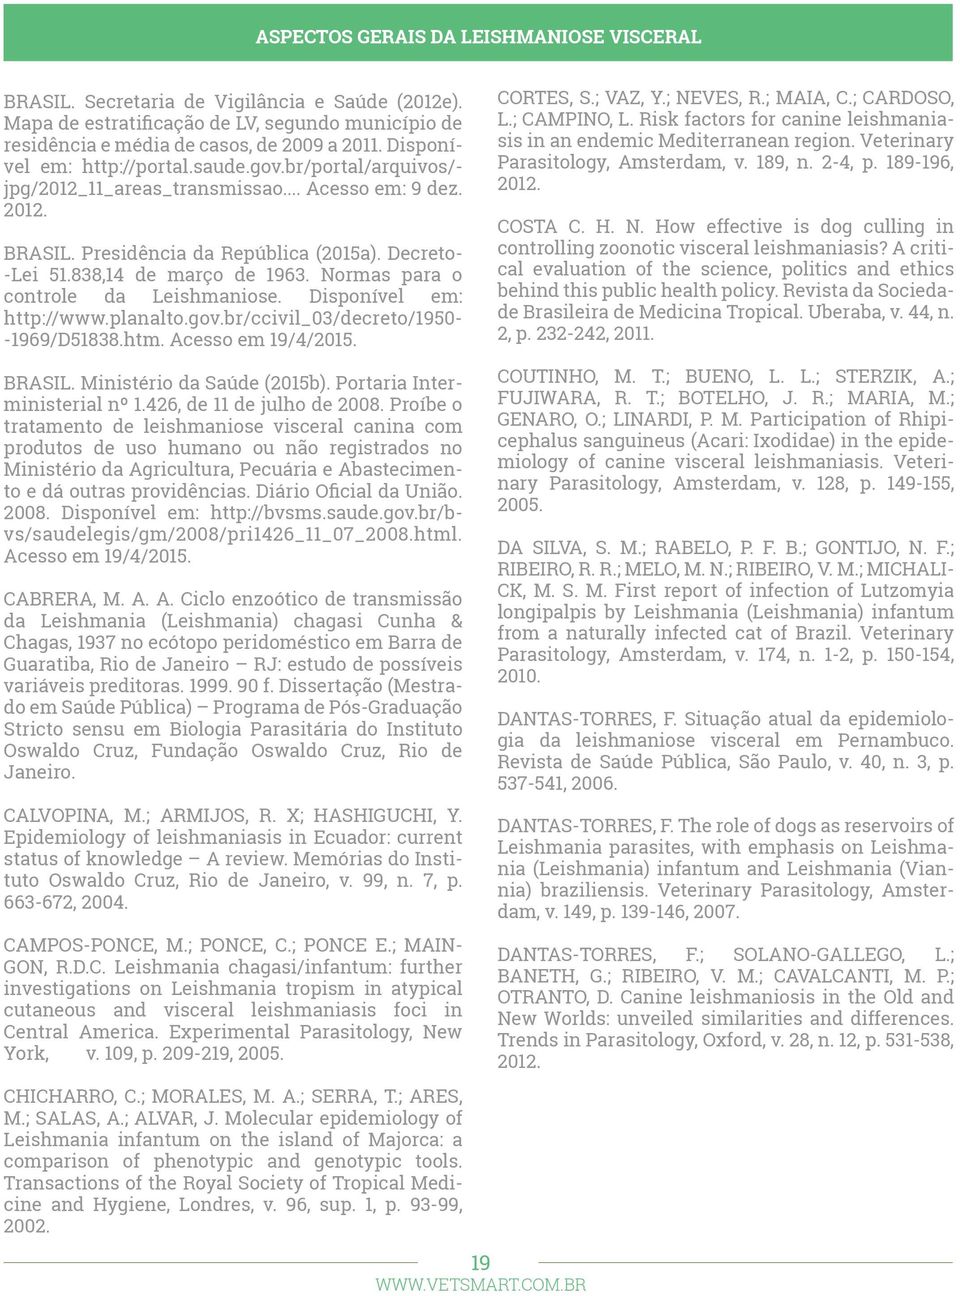 Normas para o controle da Leishmaniose. Disponível em: http://www.planalto.gov.br/ccivil_03/decreto/1950- -1969/D51838.htm. Acesso em 19/4/2015. CORTES, S.; VAZ, Y.; NEVES, R.; MAIA, C.; CARDOSO, L.